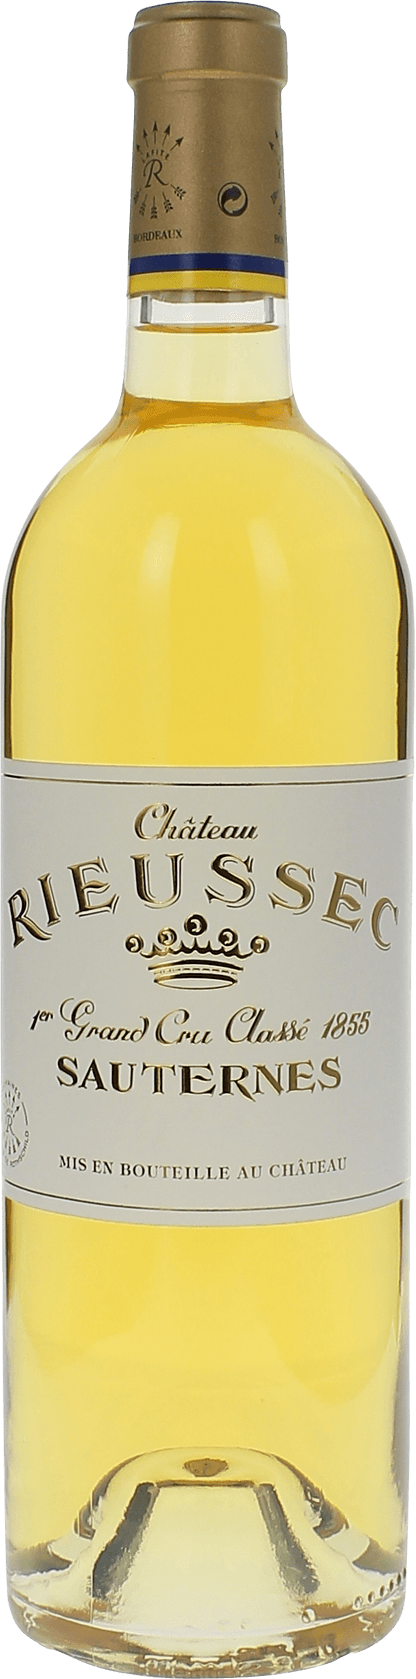 Rieussec 1945 1er cru Sauternes, Bordeaux blanc